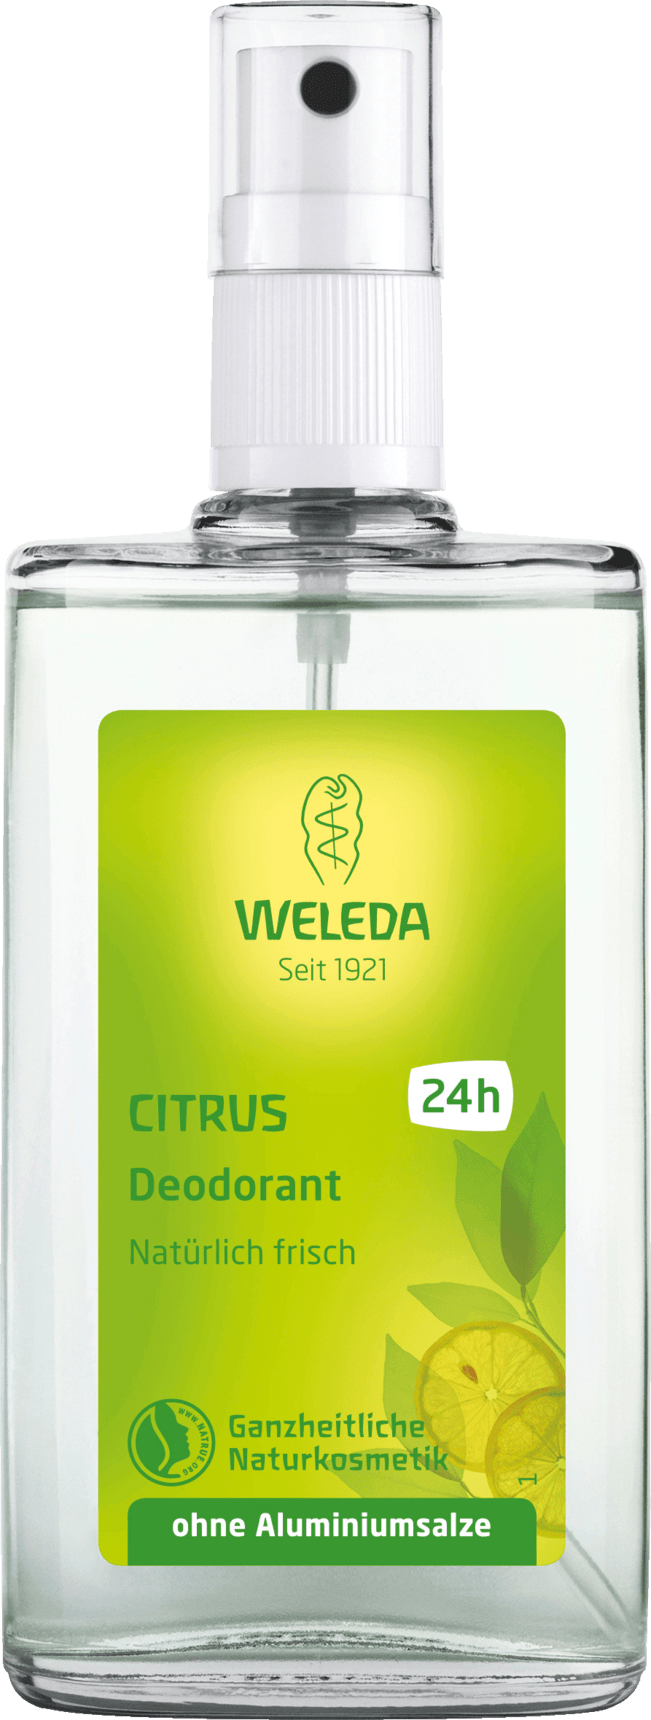 WELEDA A Deodorant Atomizer Deodorant-Citrus 100 Ml